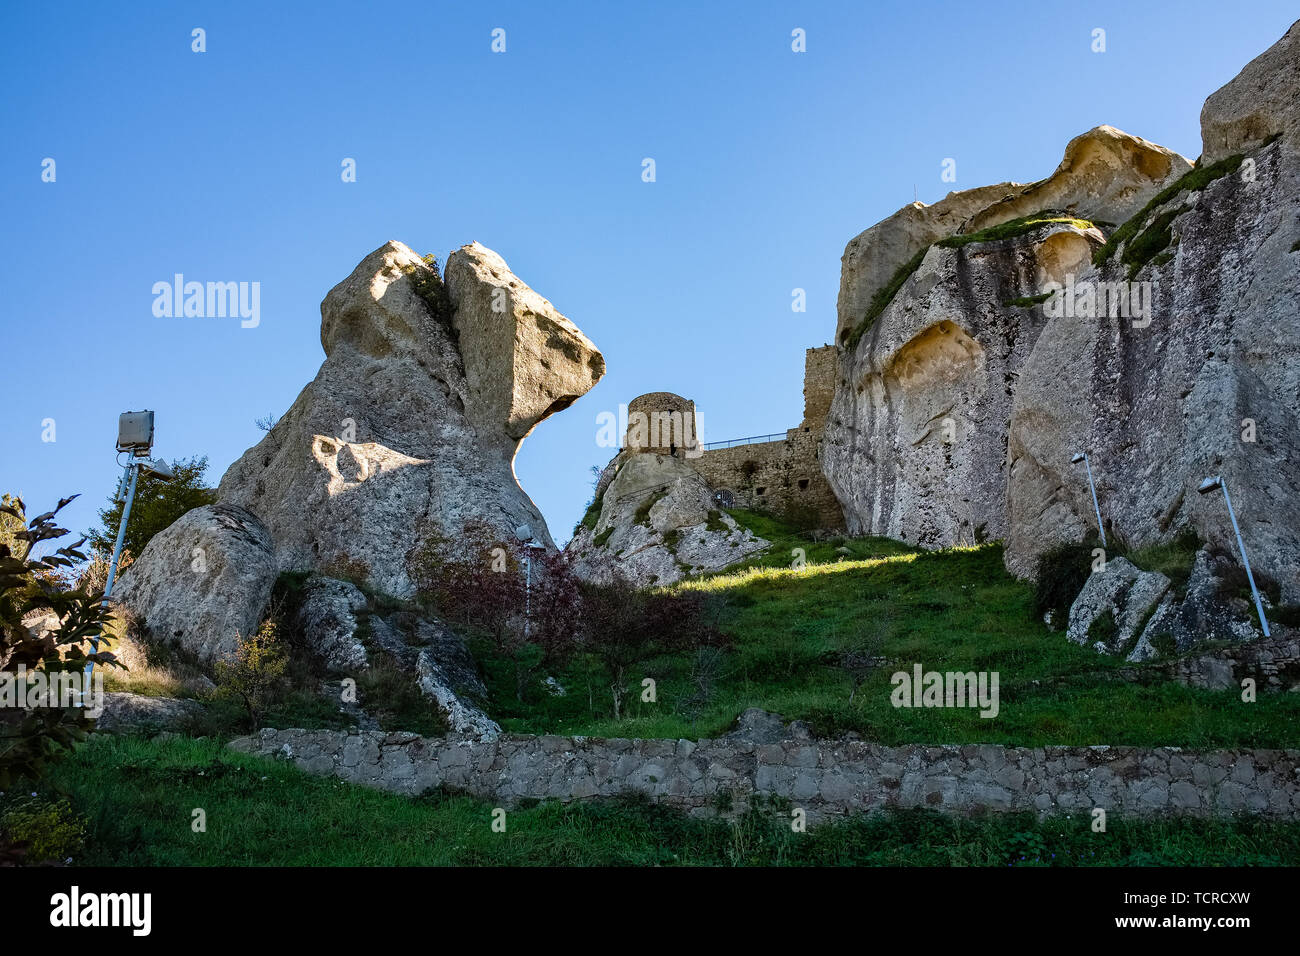 Ruines du château de Pietrapertosa. Dolomites de la Basilicate montagnes Dolomiti Lucane. Région Basilicate, Italie Banque D'Images